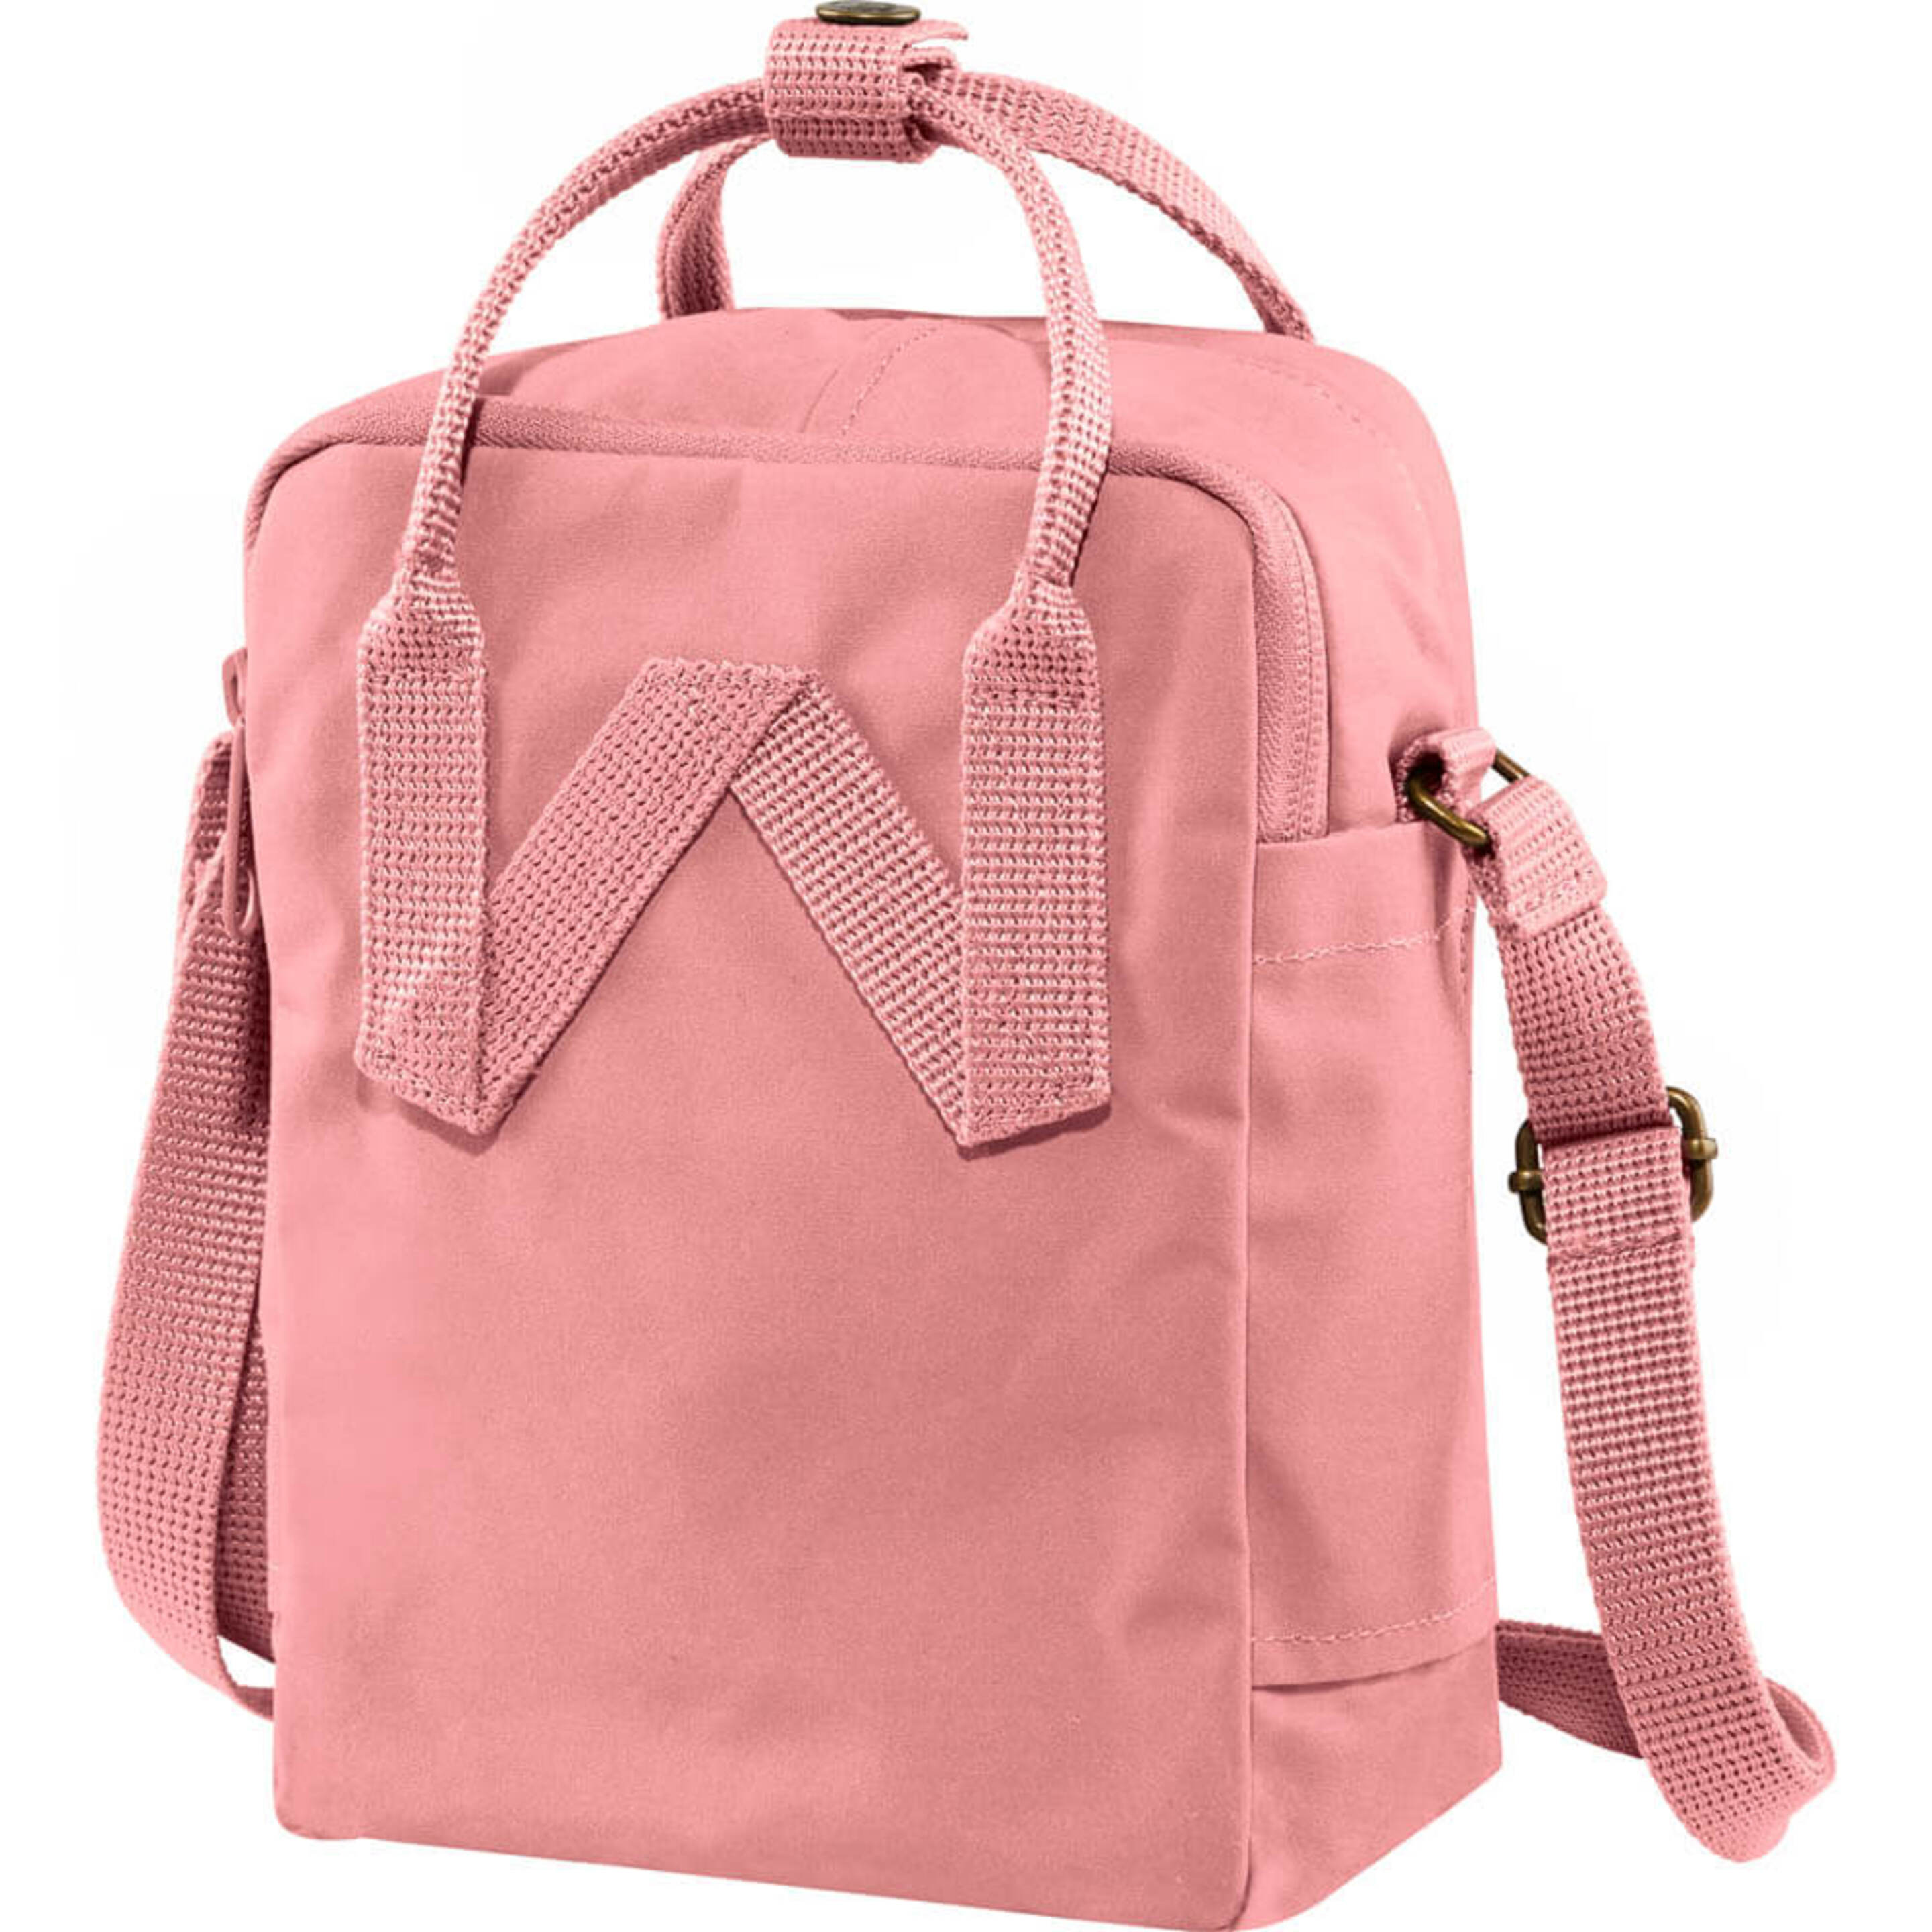 Fjallraven Kånken Sling Sports Backpack, Unisex-adult, Pink, One Size - Multicolor  MKP